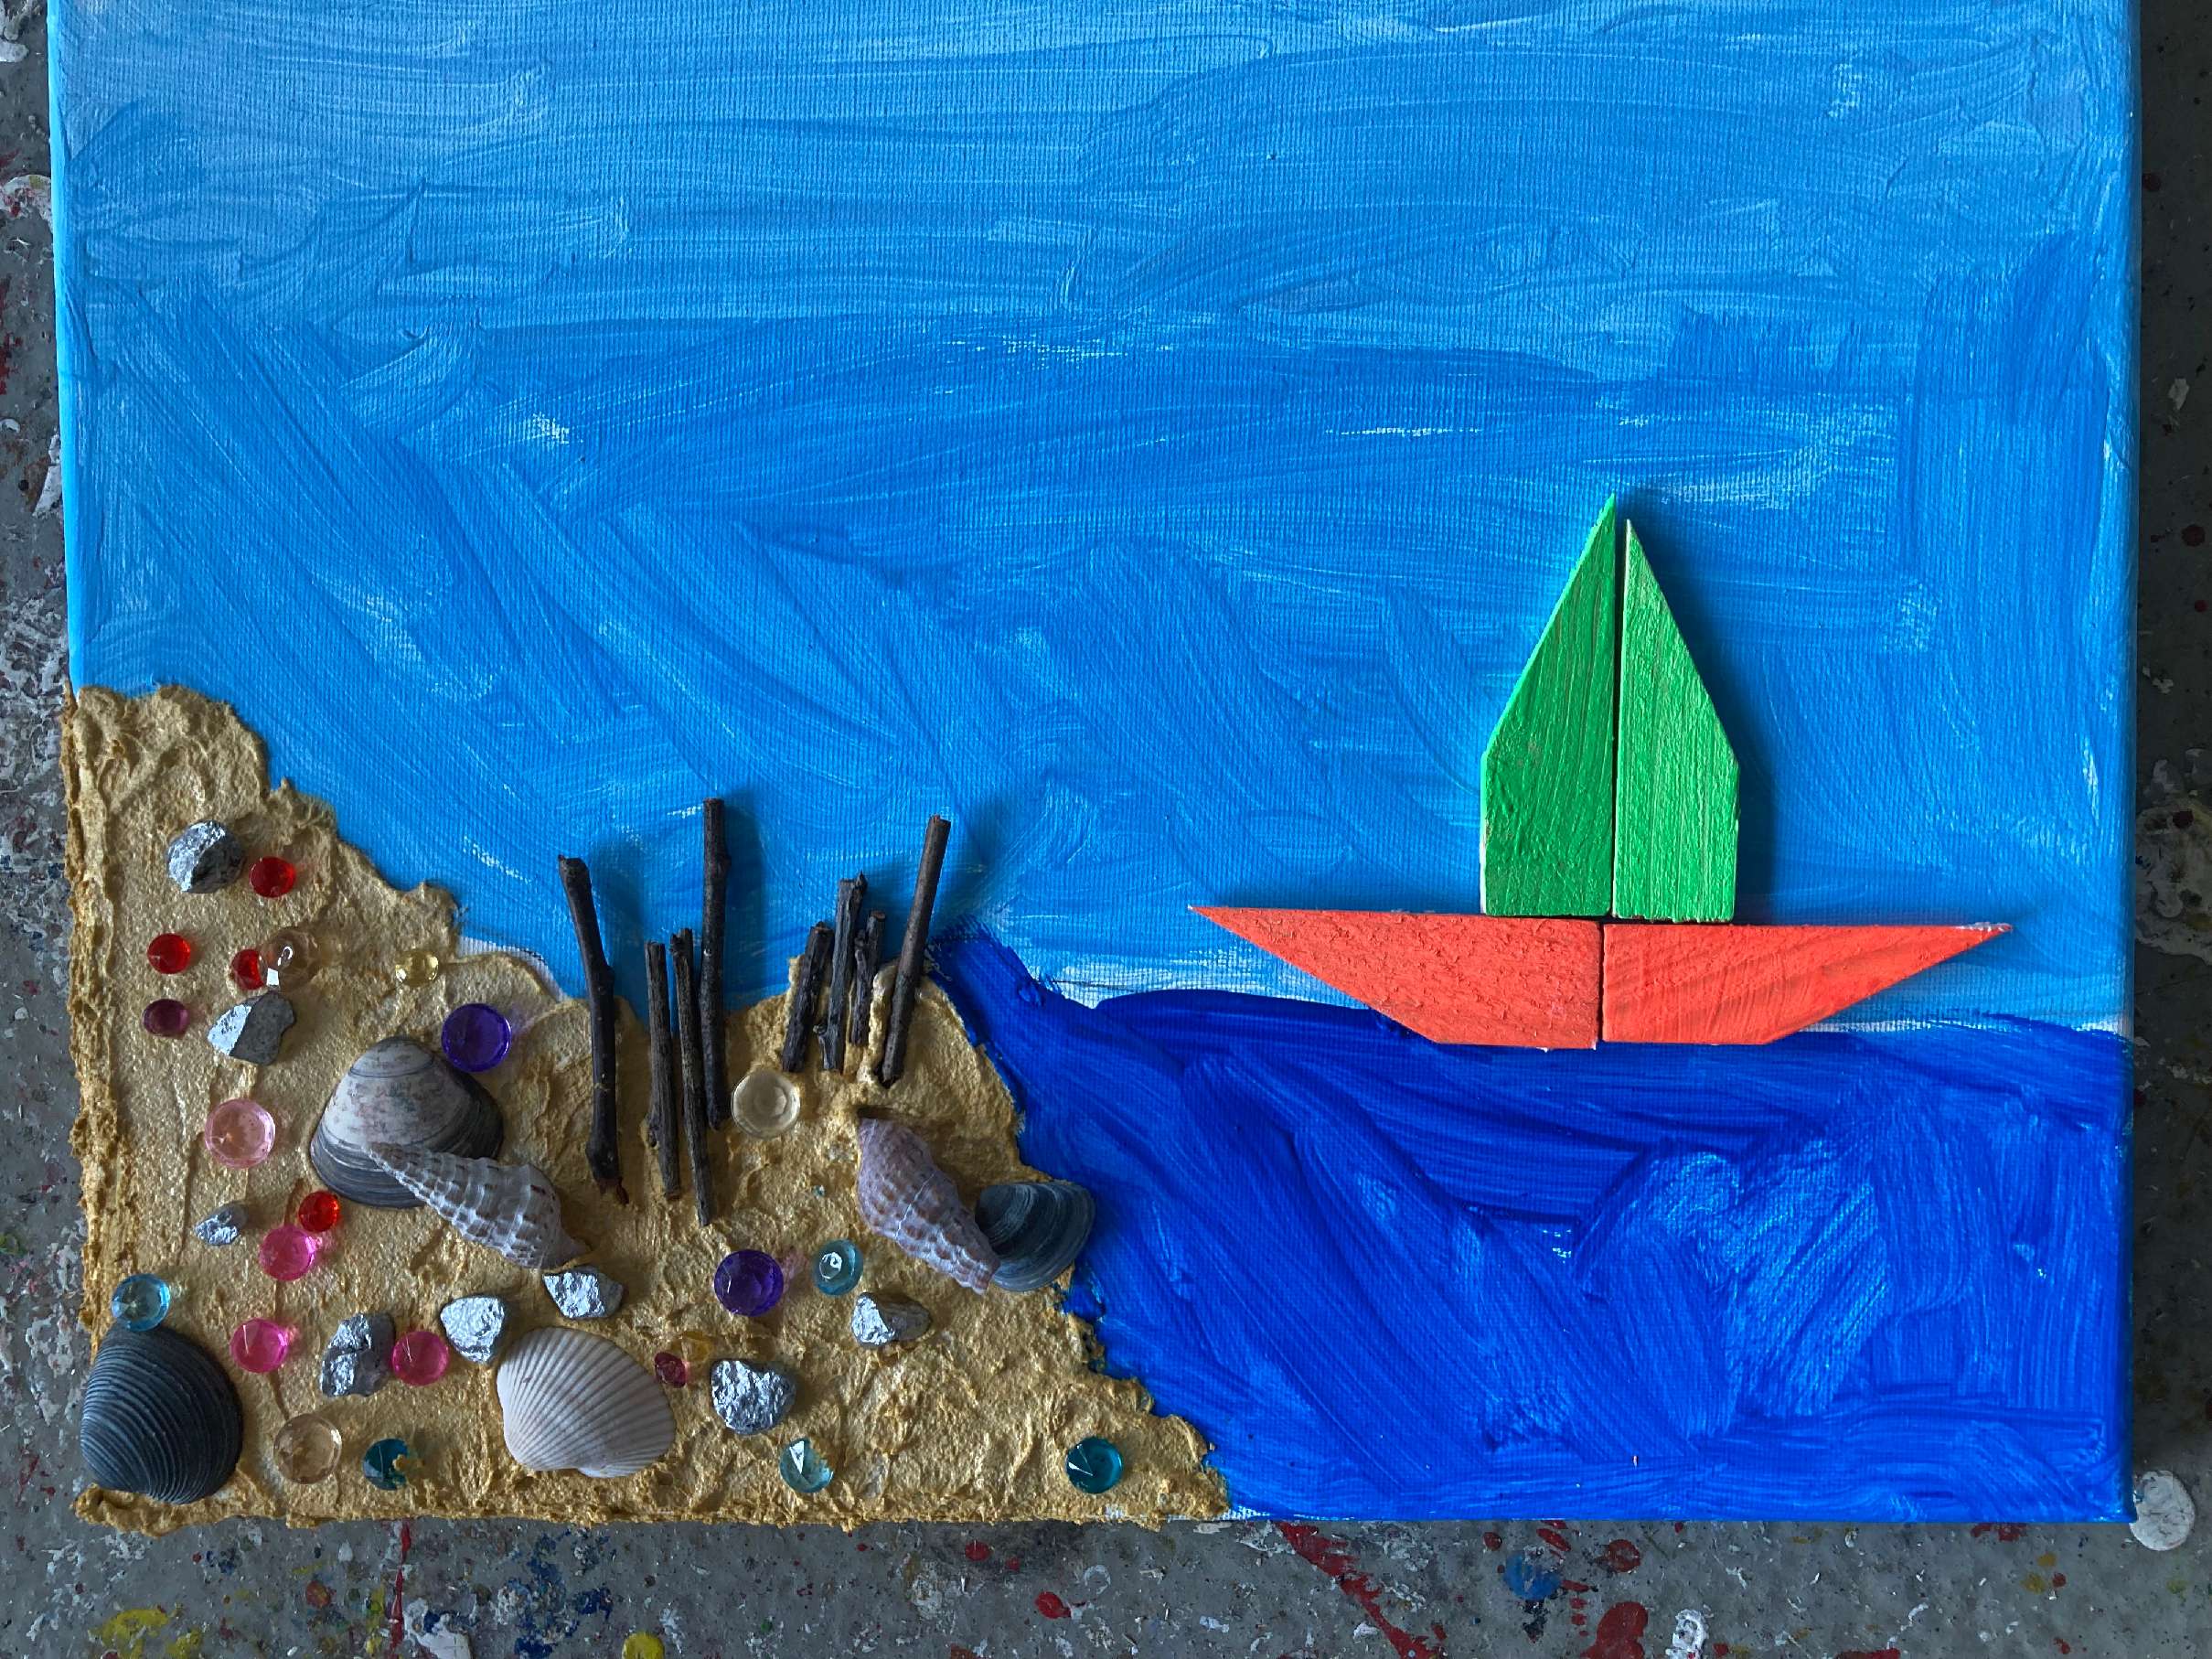 hier ist eine Leinwand mit gemaltem Strand, Muscheln und ein Schiff zu sehen.